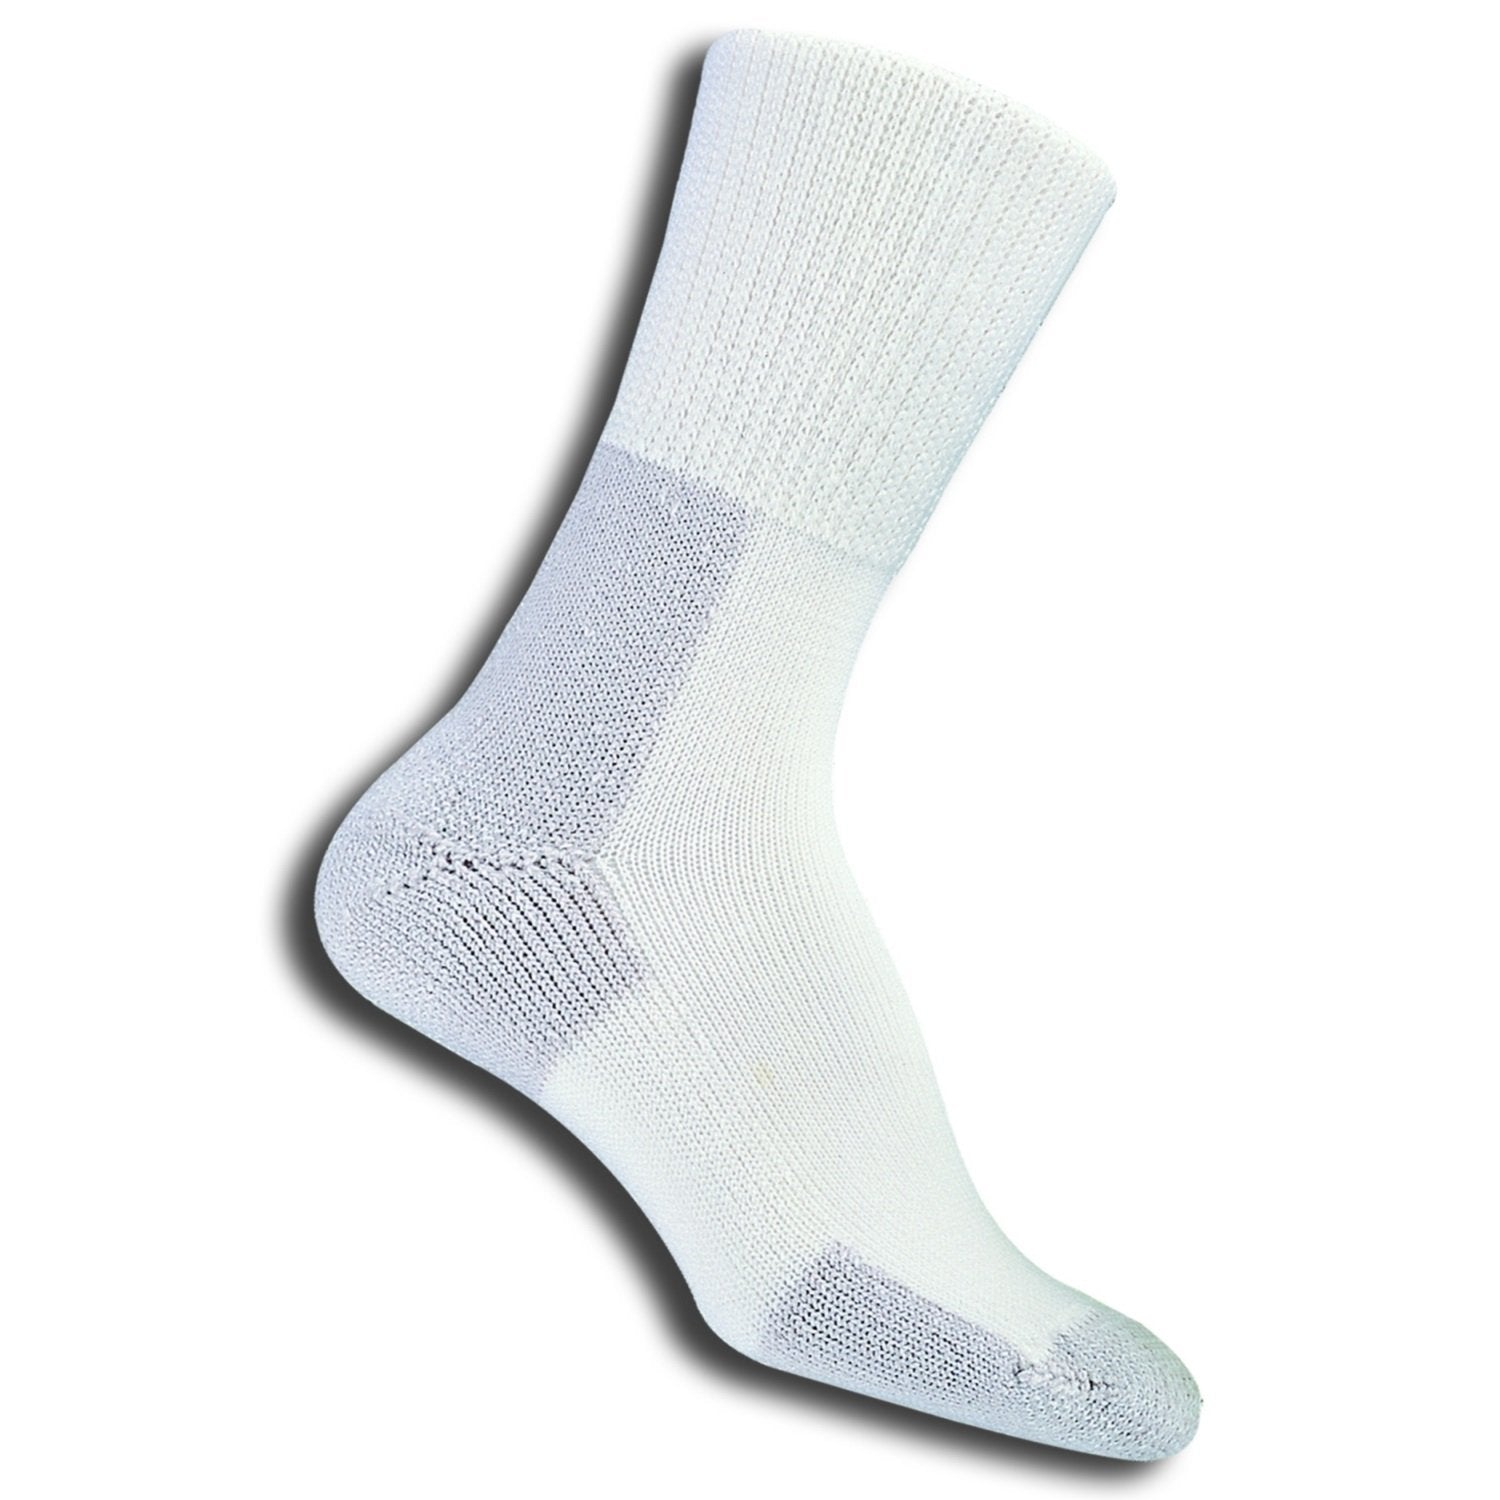 Thorlo XJ Running Socks - Unisex